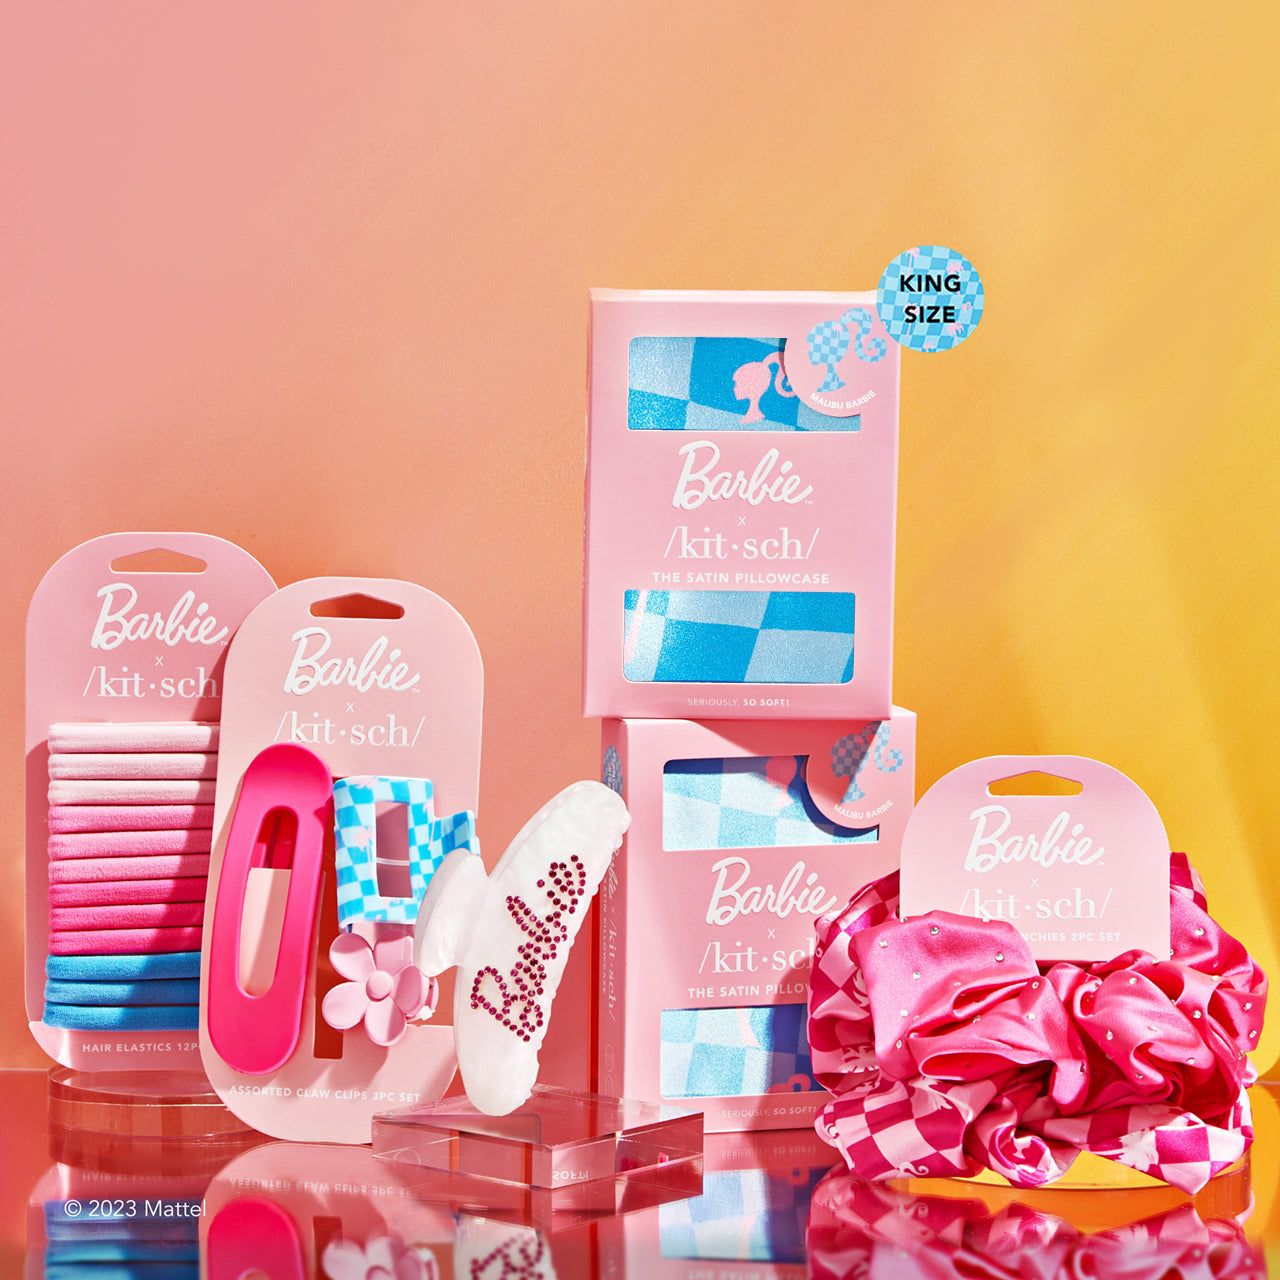 Barbie™ x Kitsch King コレクターズ・バンドル